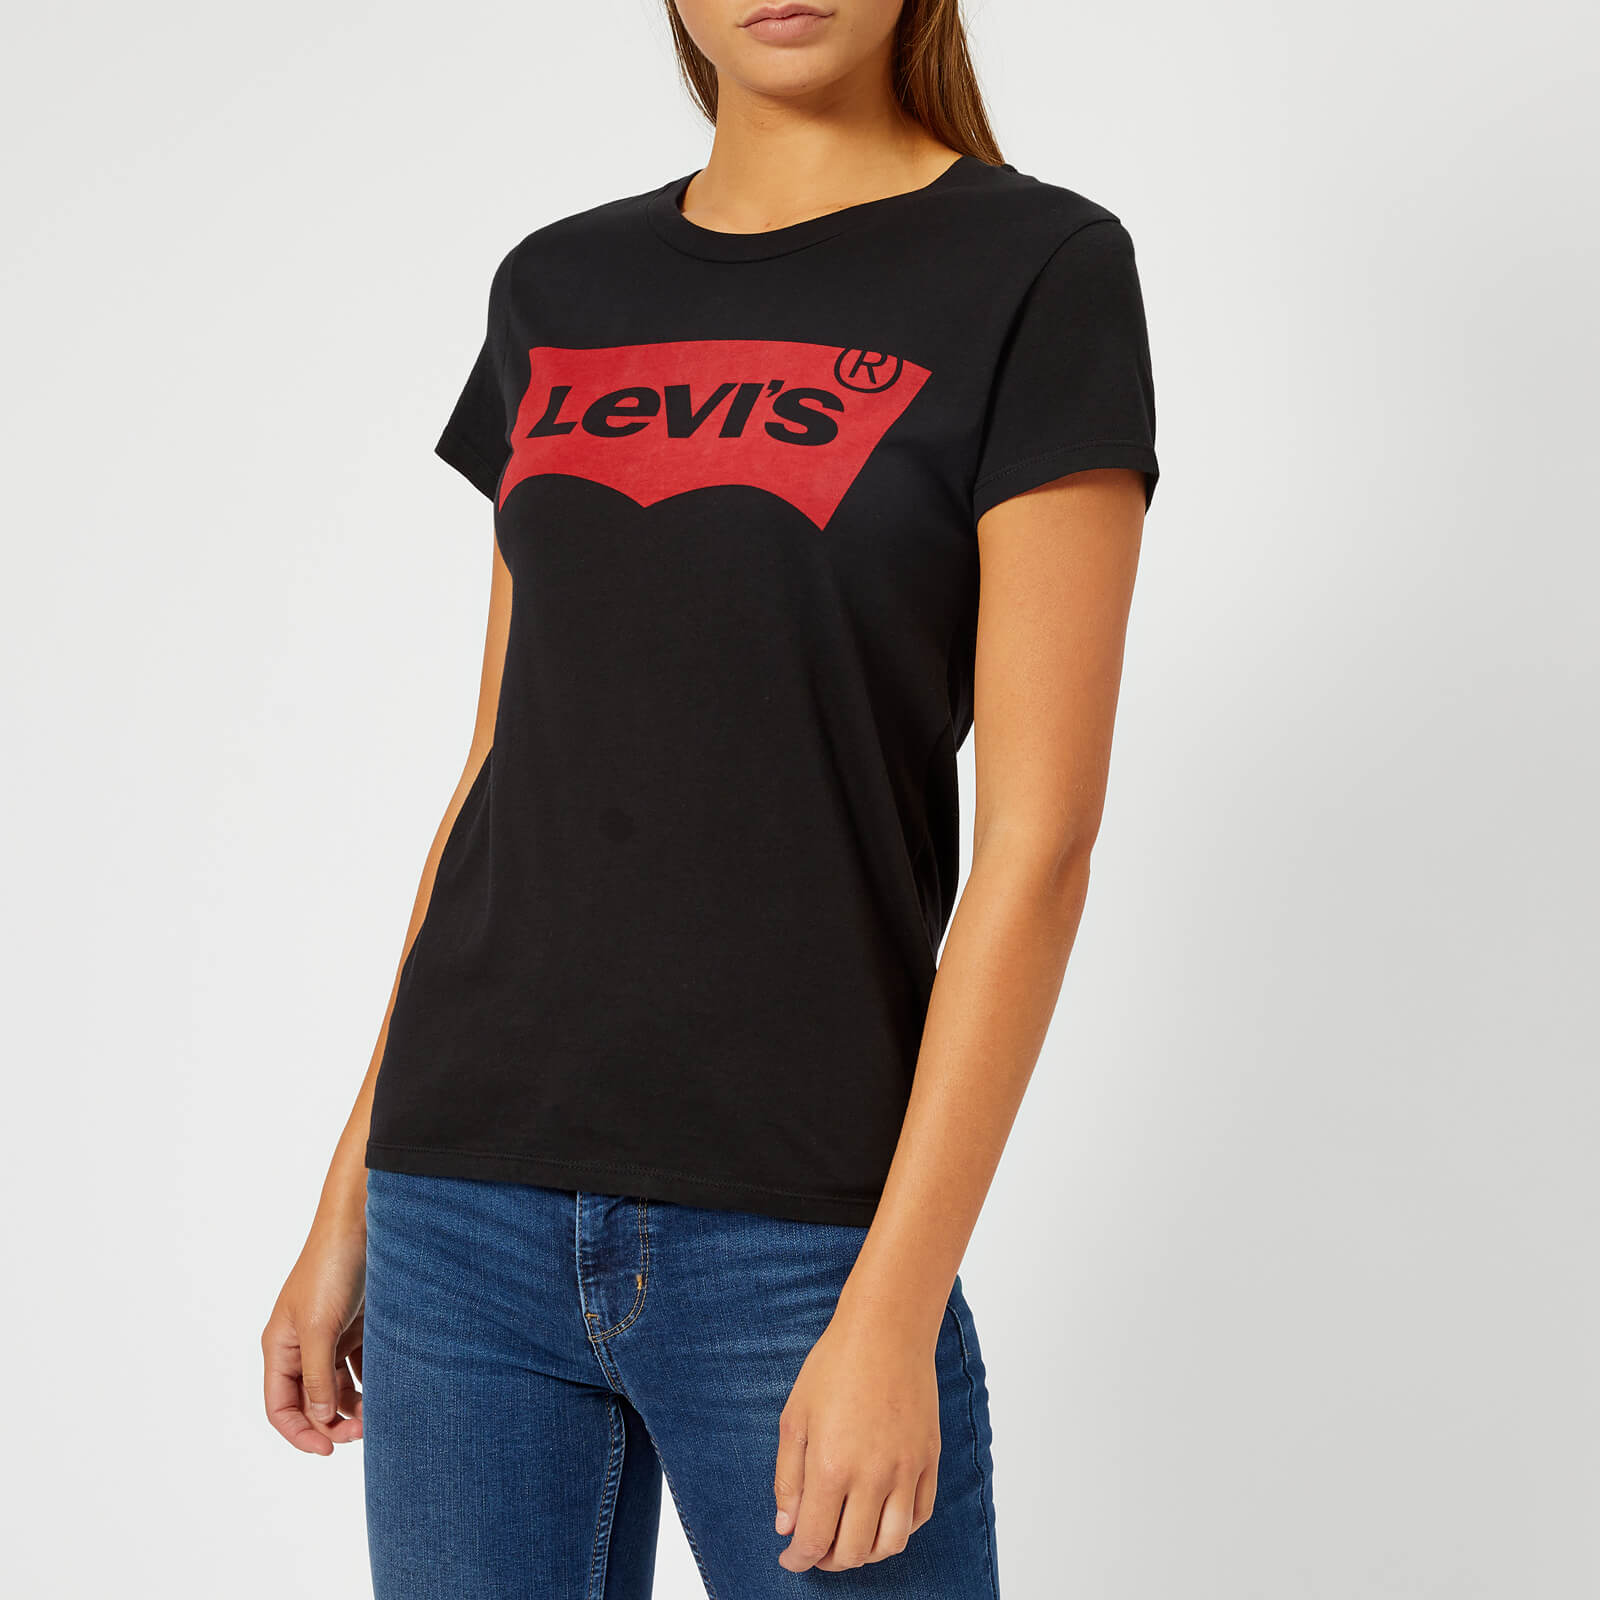 womens black levis t shirt,cheap - OFF 54% 